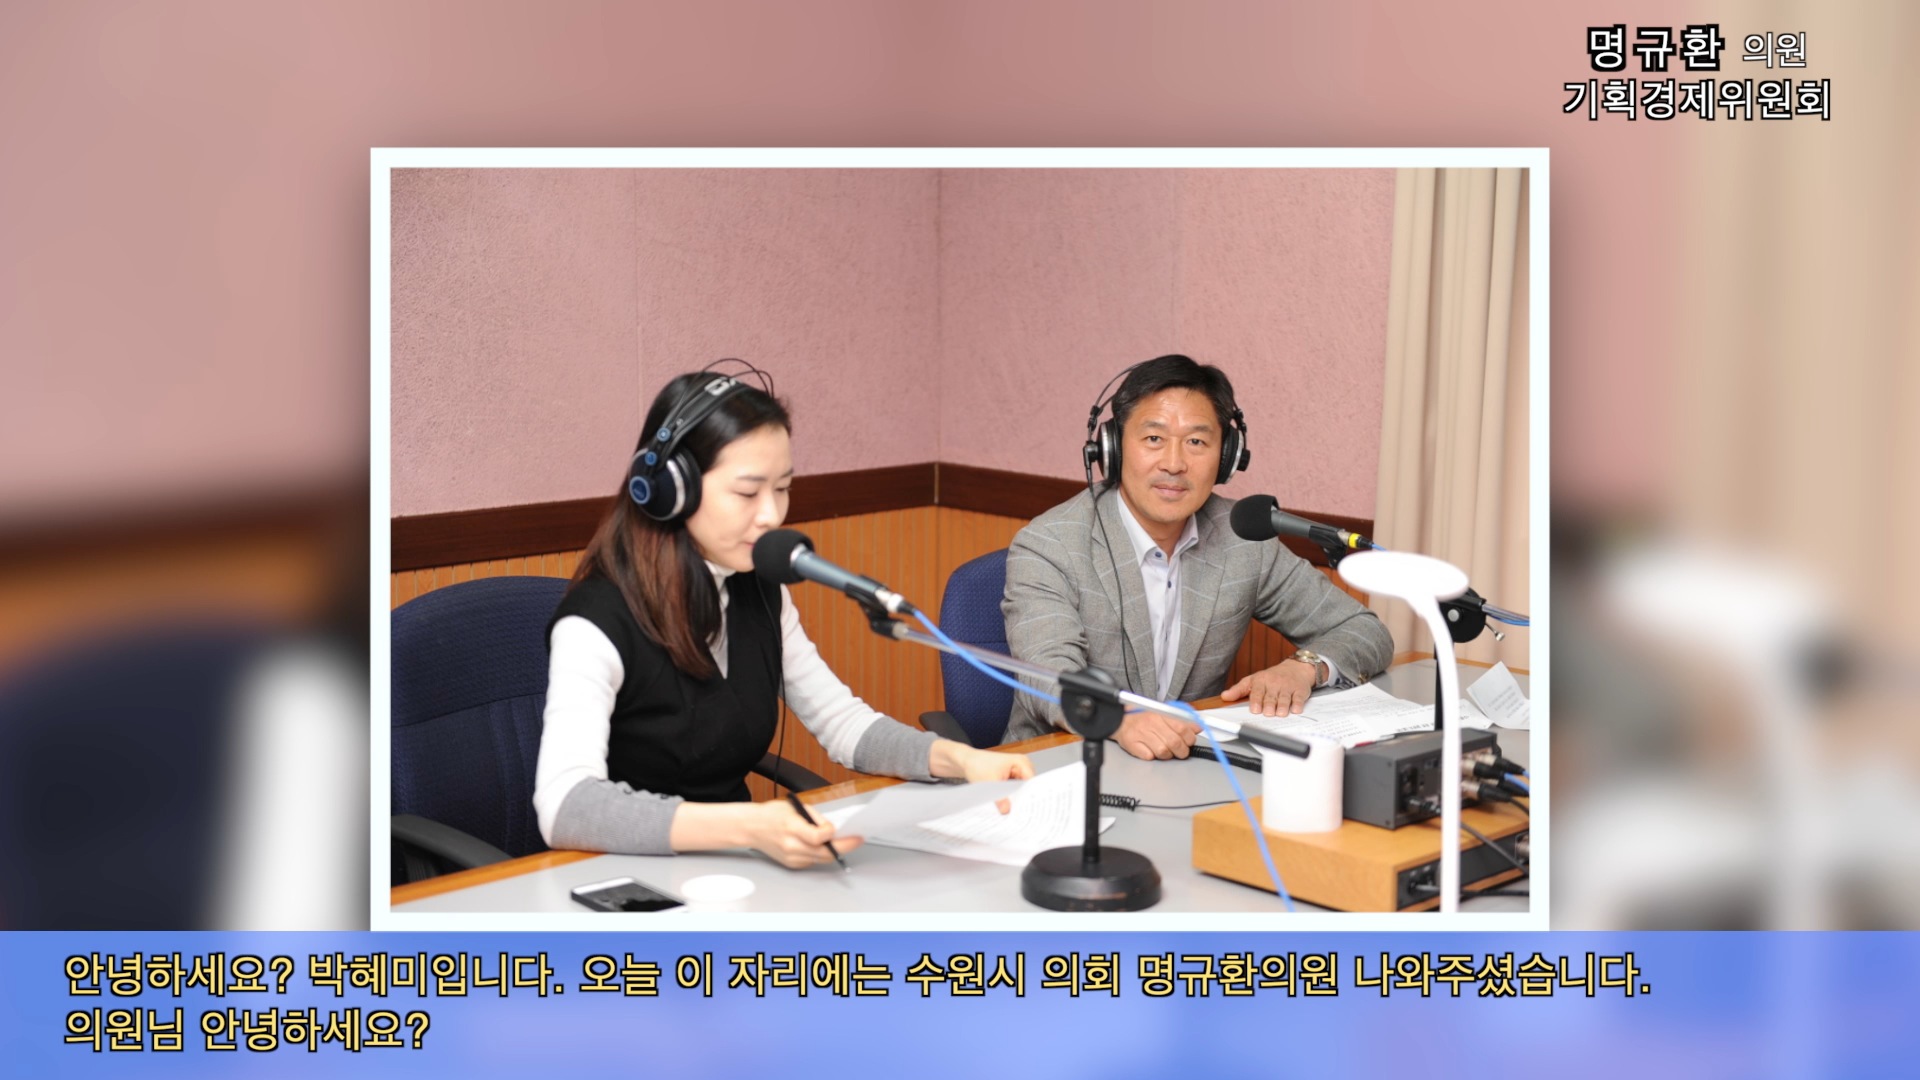 명규환의원 경기방송인터뷰 (2014. 12.15)